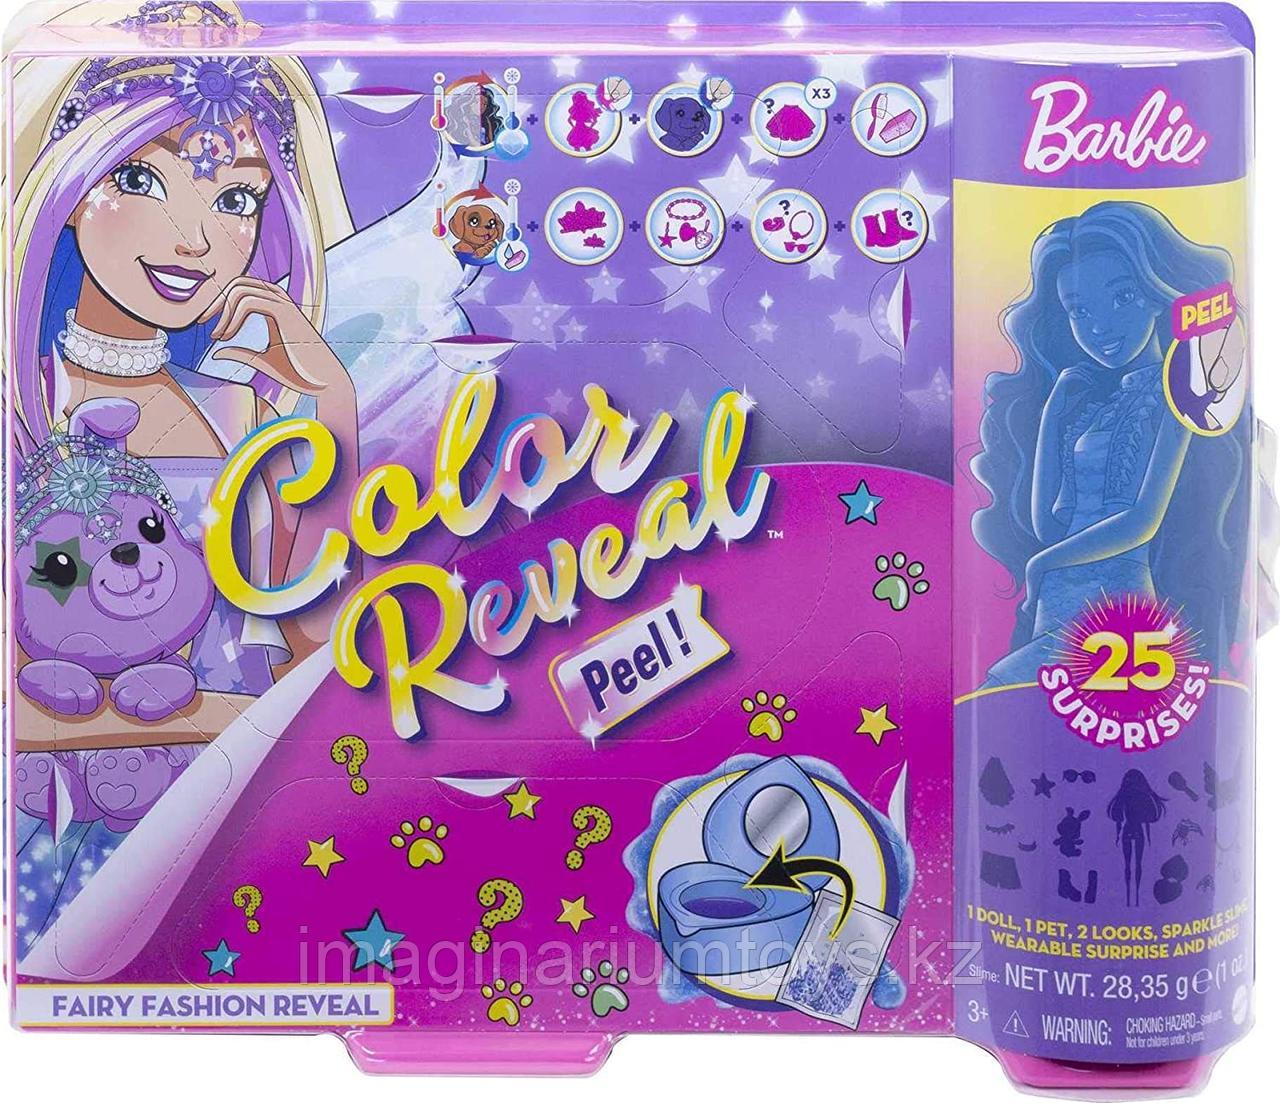 Кукла Barbie Color Reveal Peel игровой набор 25 сюрпризов Фея